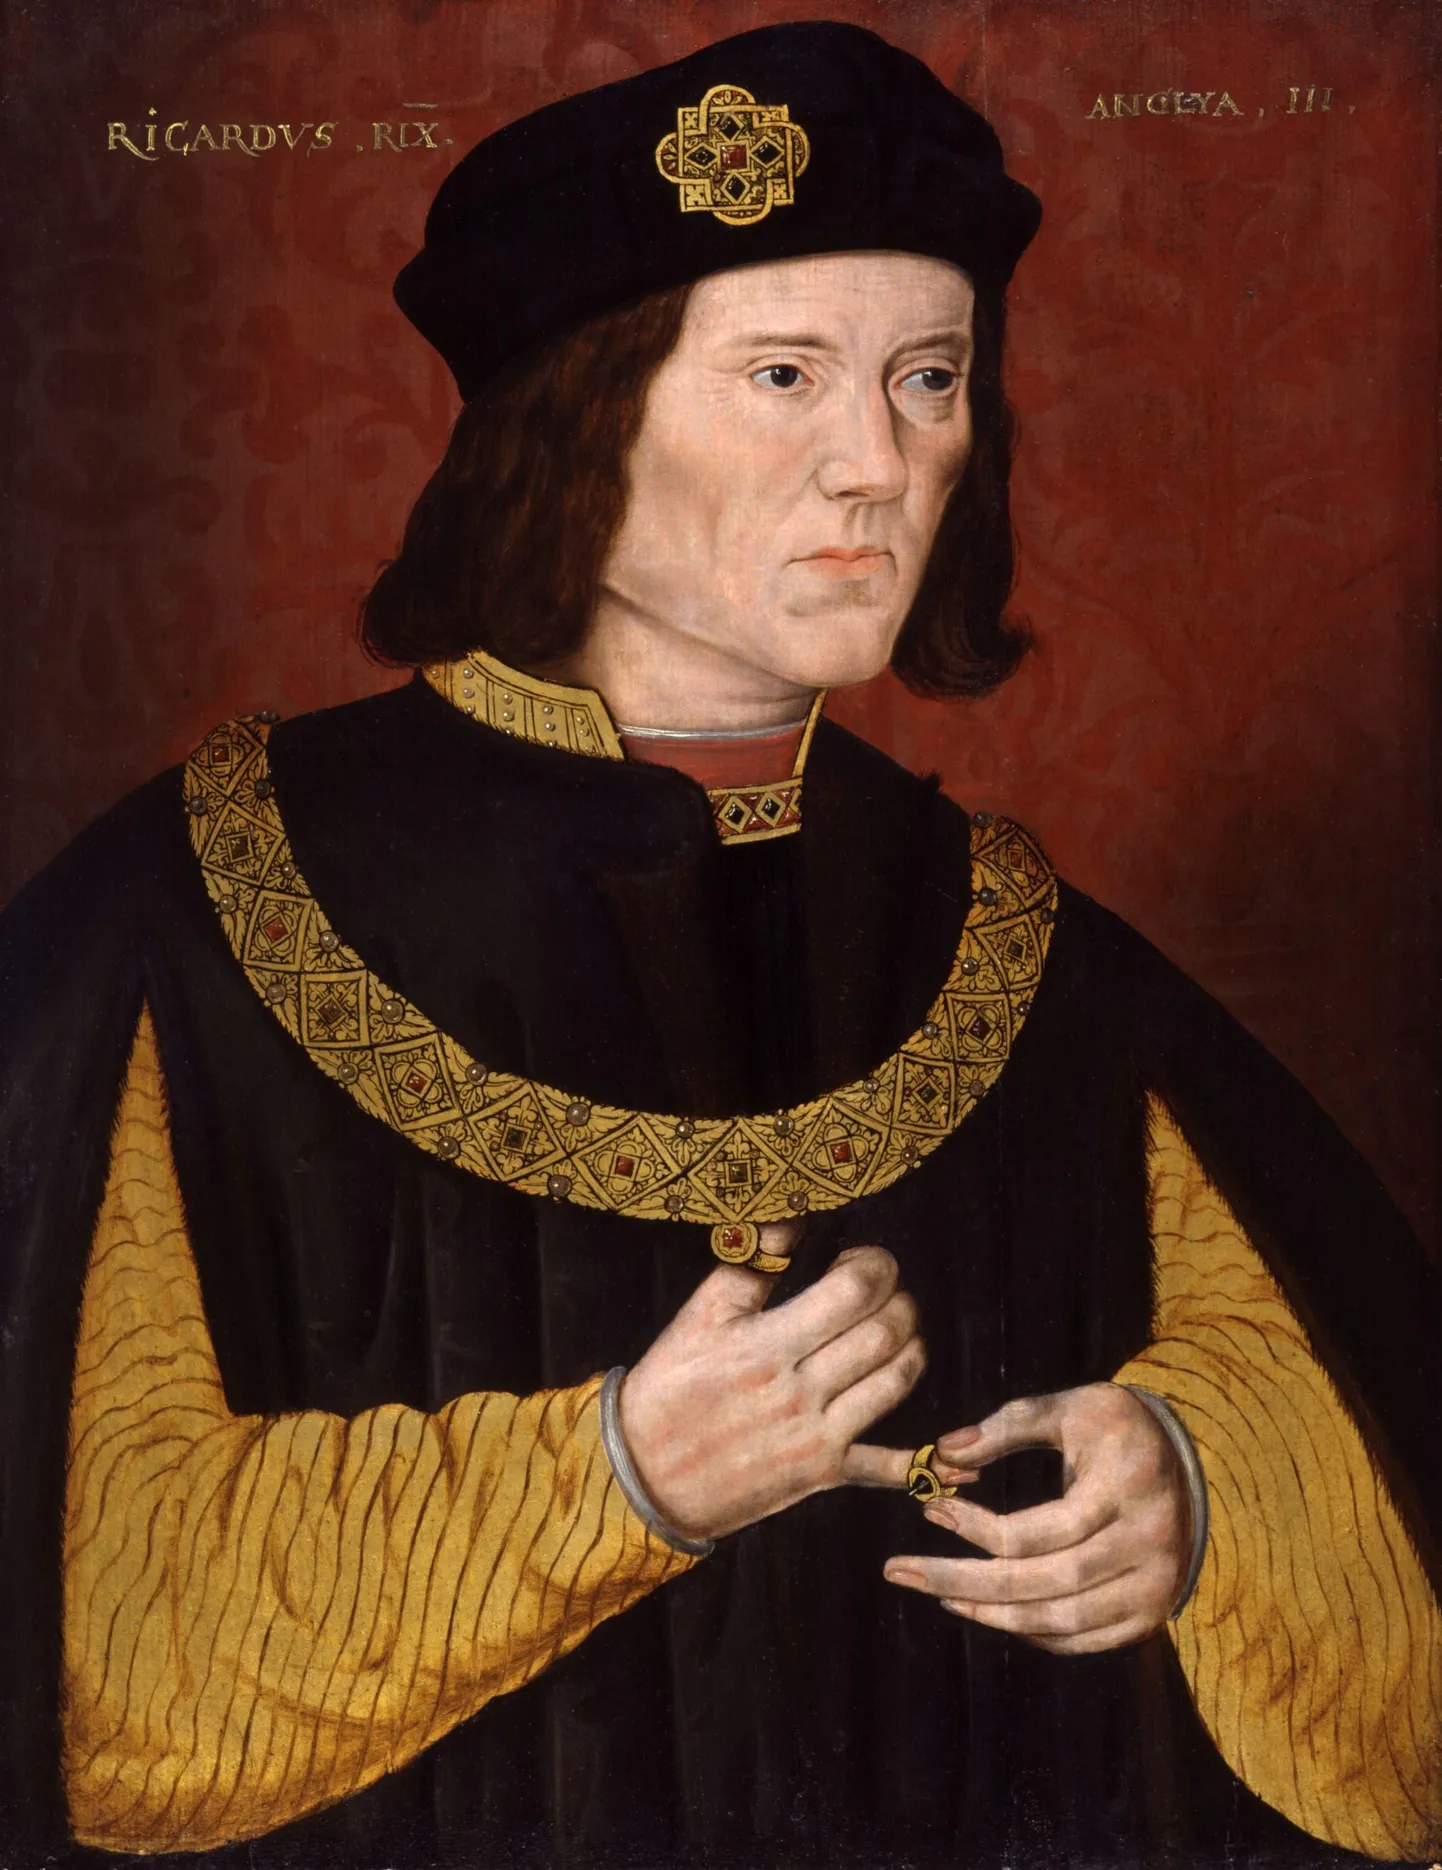 Ричард III, один из самых знаменитых злодеев и горбунов в истории, злодеем, судя по всему, не был, да и горбуном – тоже. На прижизненных портретах он выглядит вполне обычно.